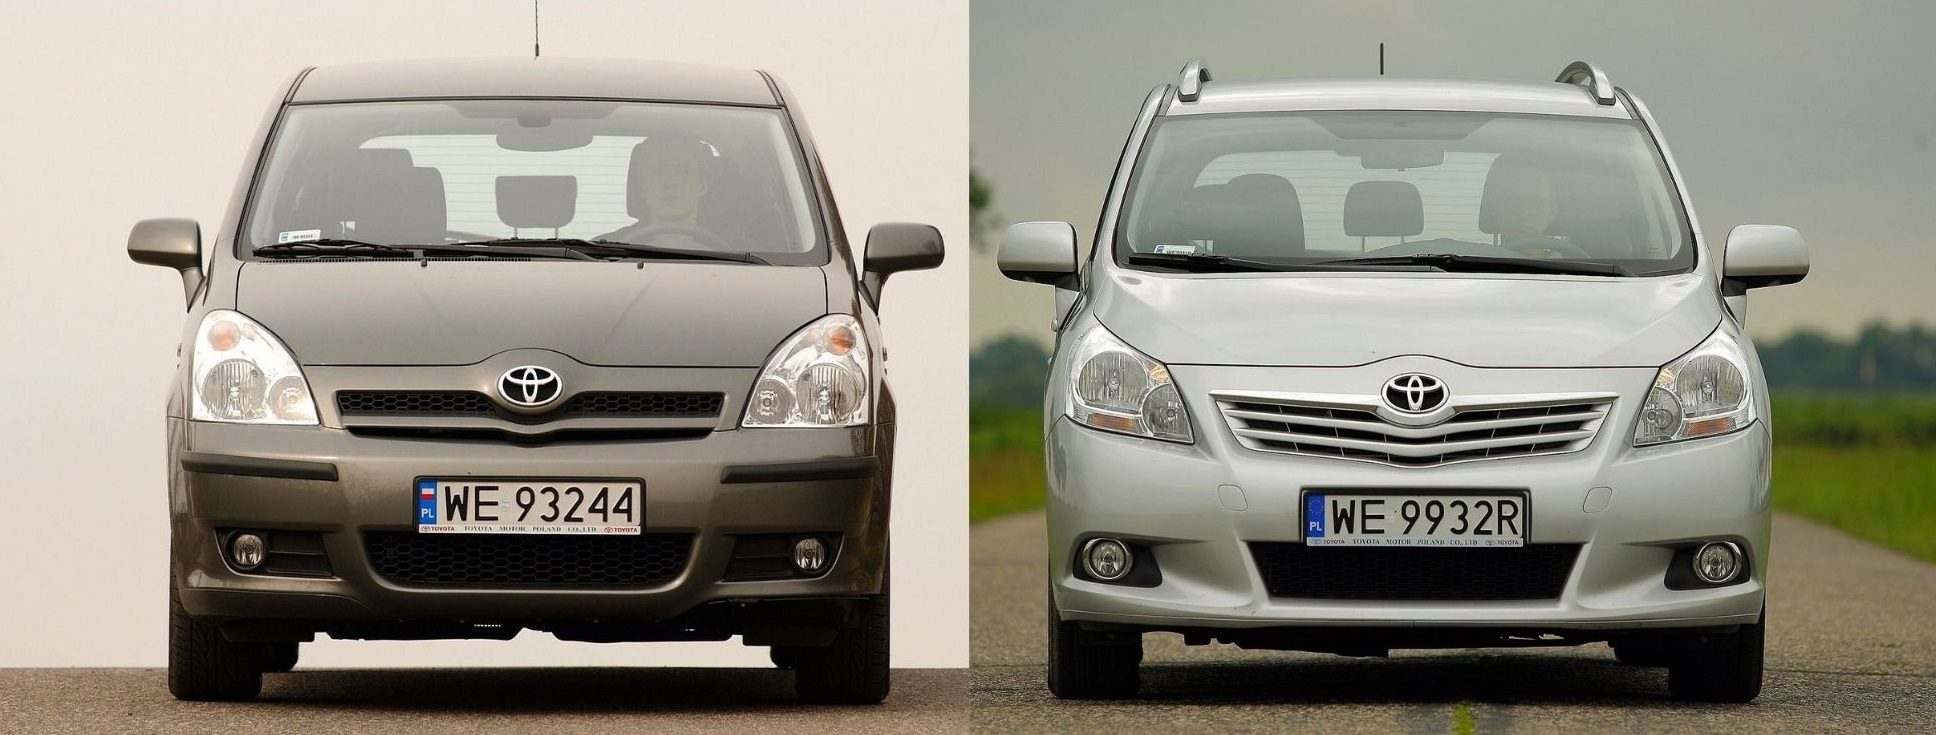 Używana Toyota Corolla Verso Ii I Toyota Verso - Którą Wybrać?